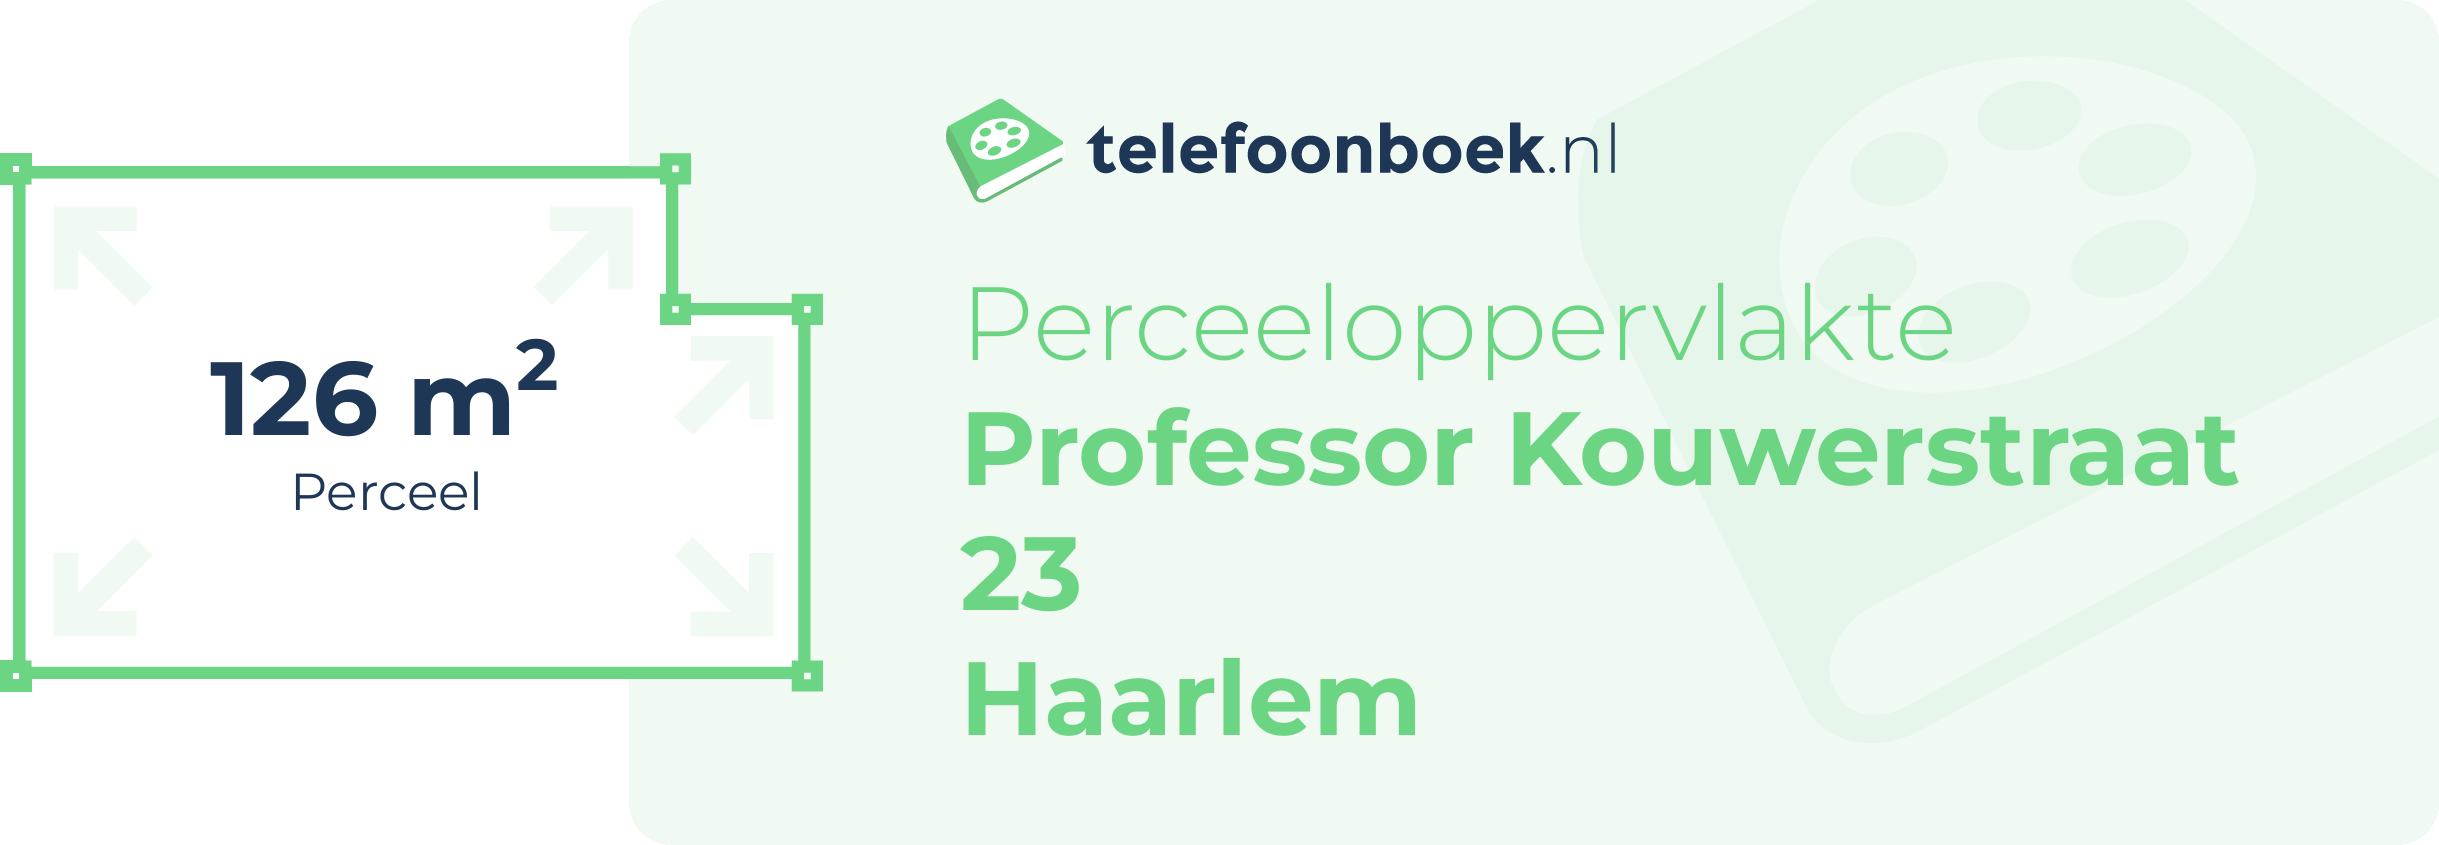 Perceeloppervlakte Professor Kouwerstraat 23 Haarlem